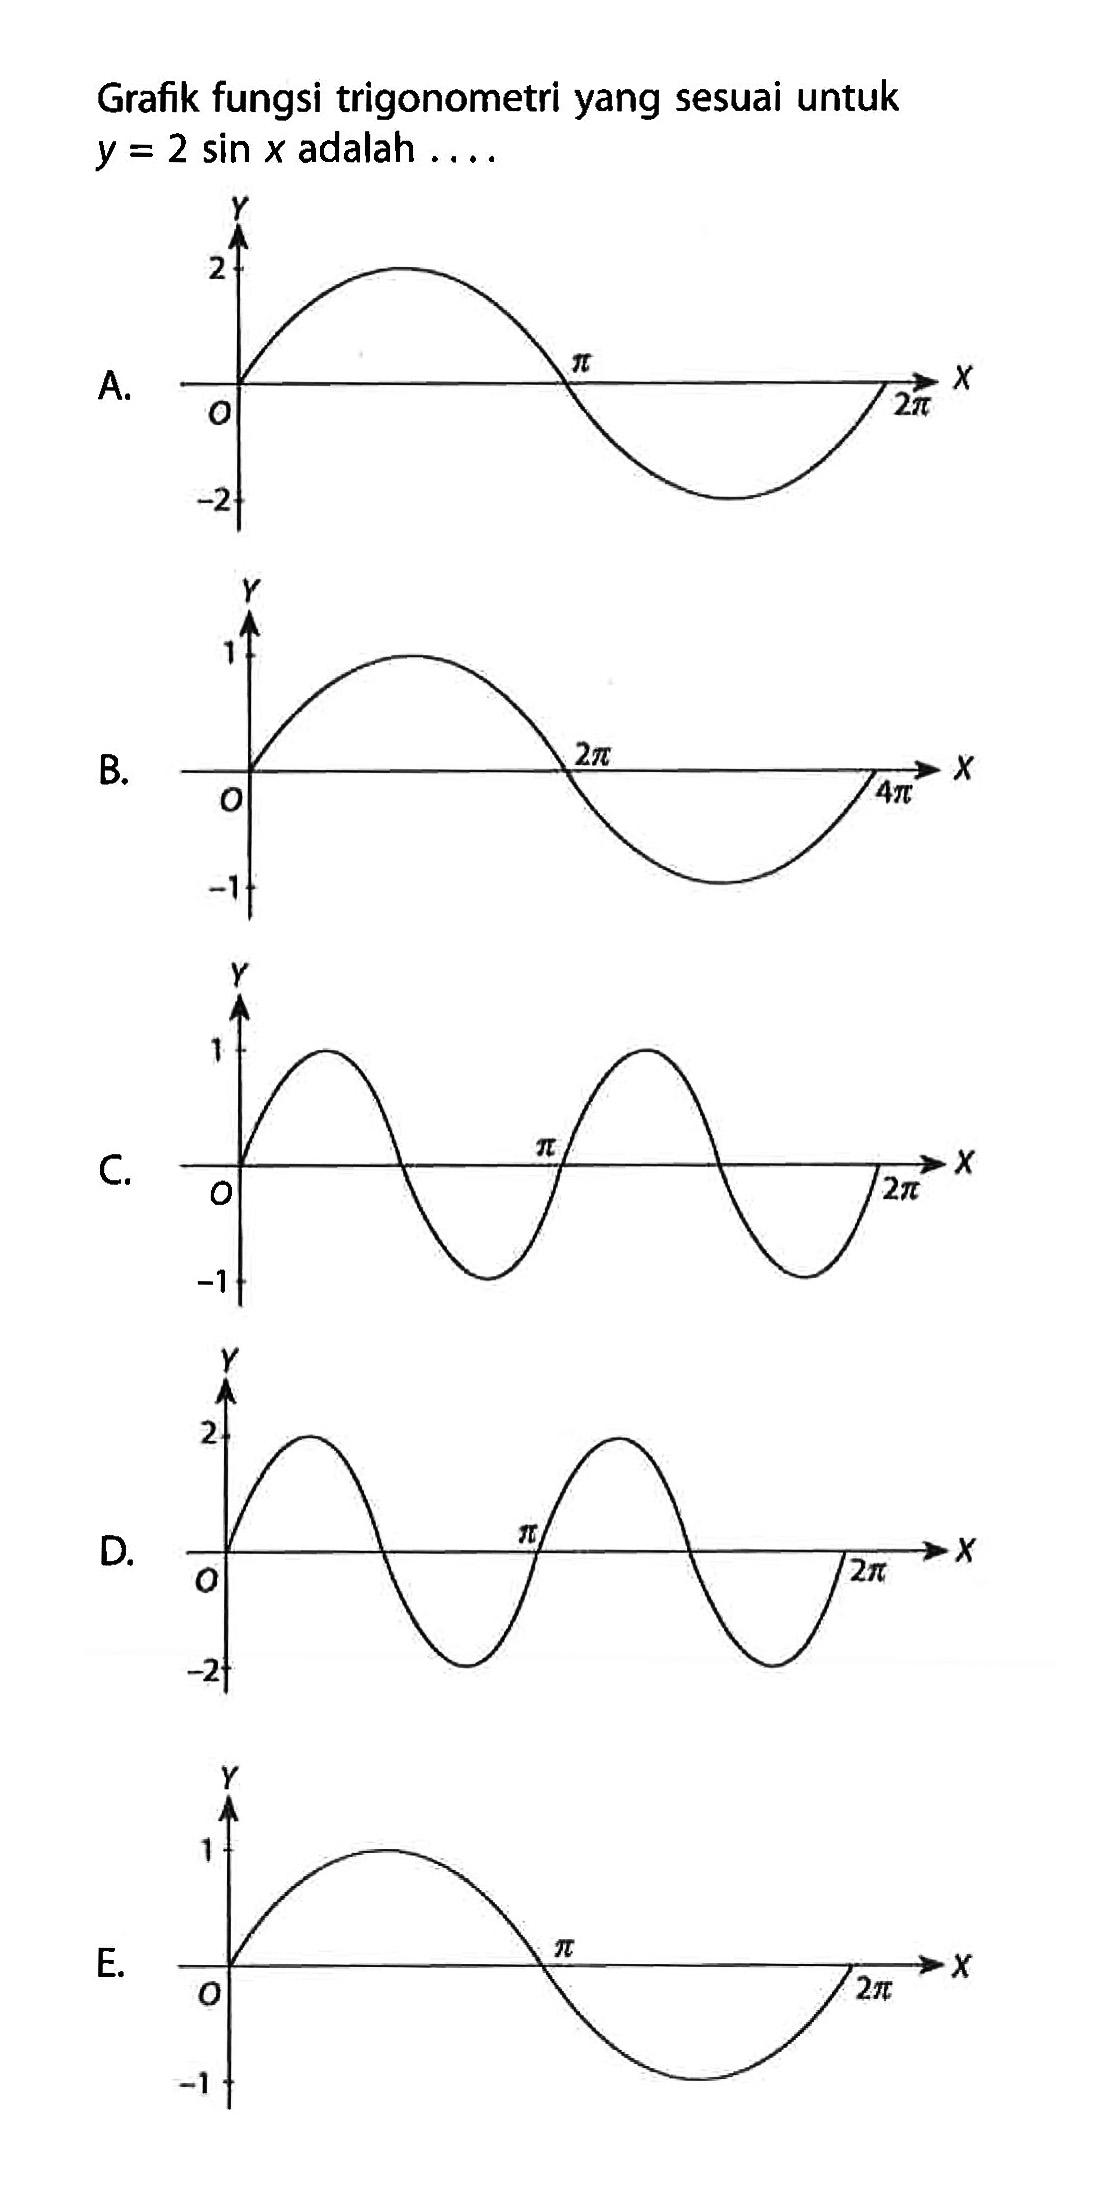 Grafik fungsi trigonometri yang sesuai untuk y=2 sin x adalah ....
